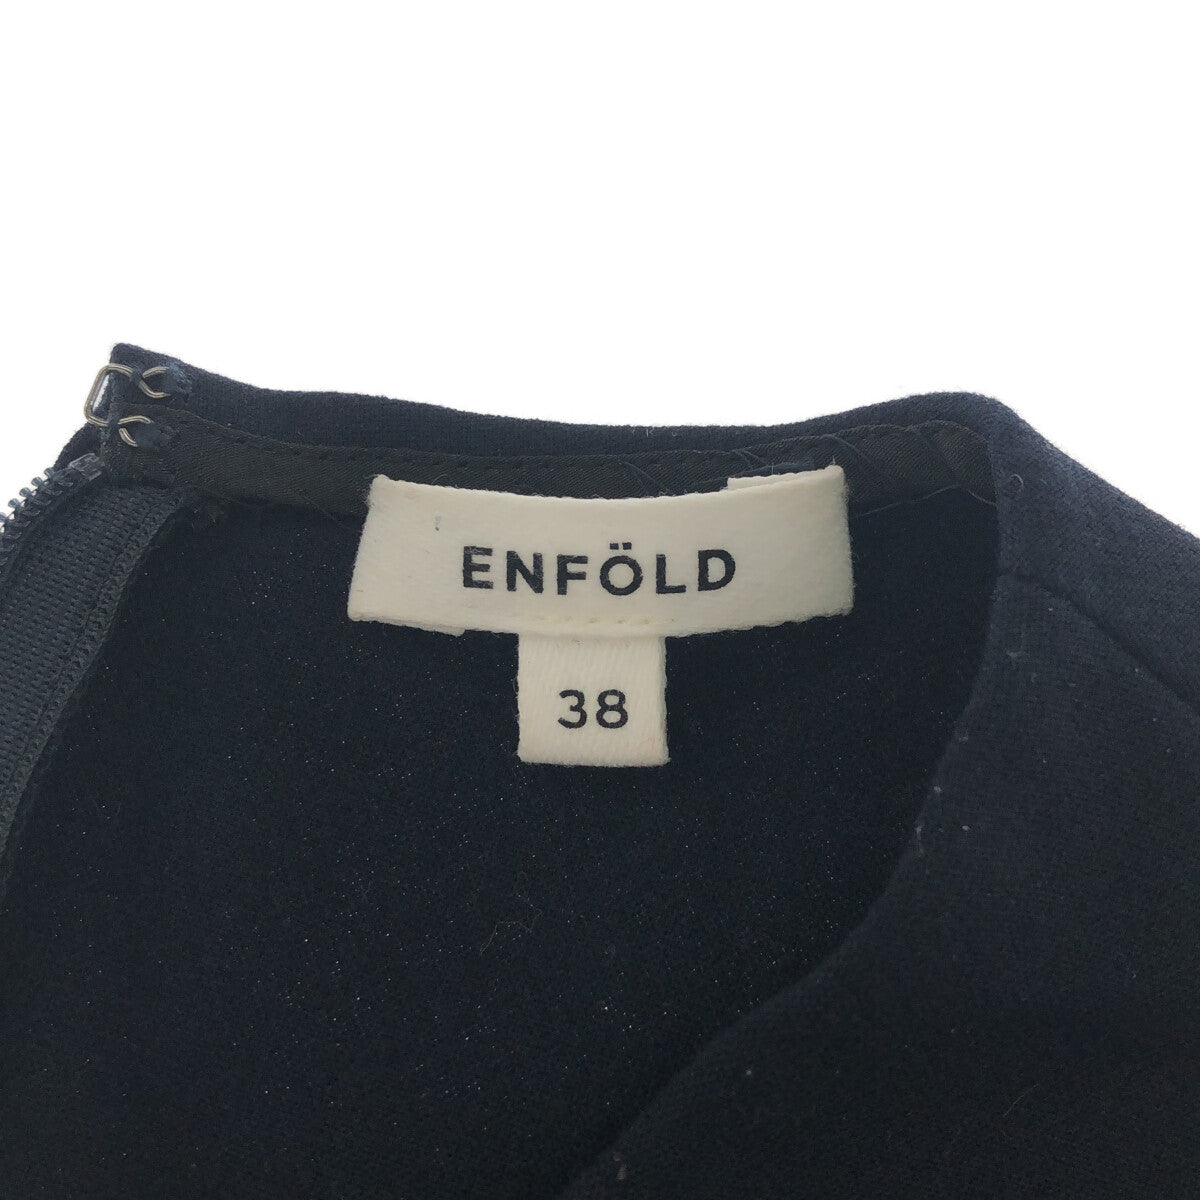 ENFOLD / エンフォルド | アシンメトリーペプラムプルオーバー | 38